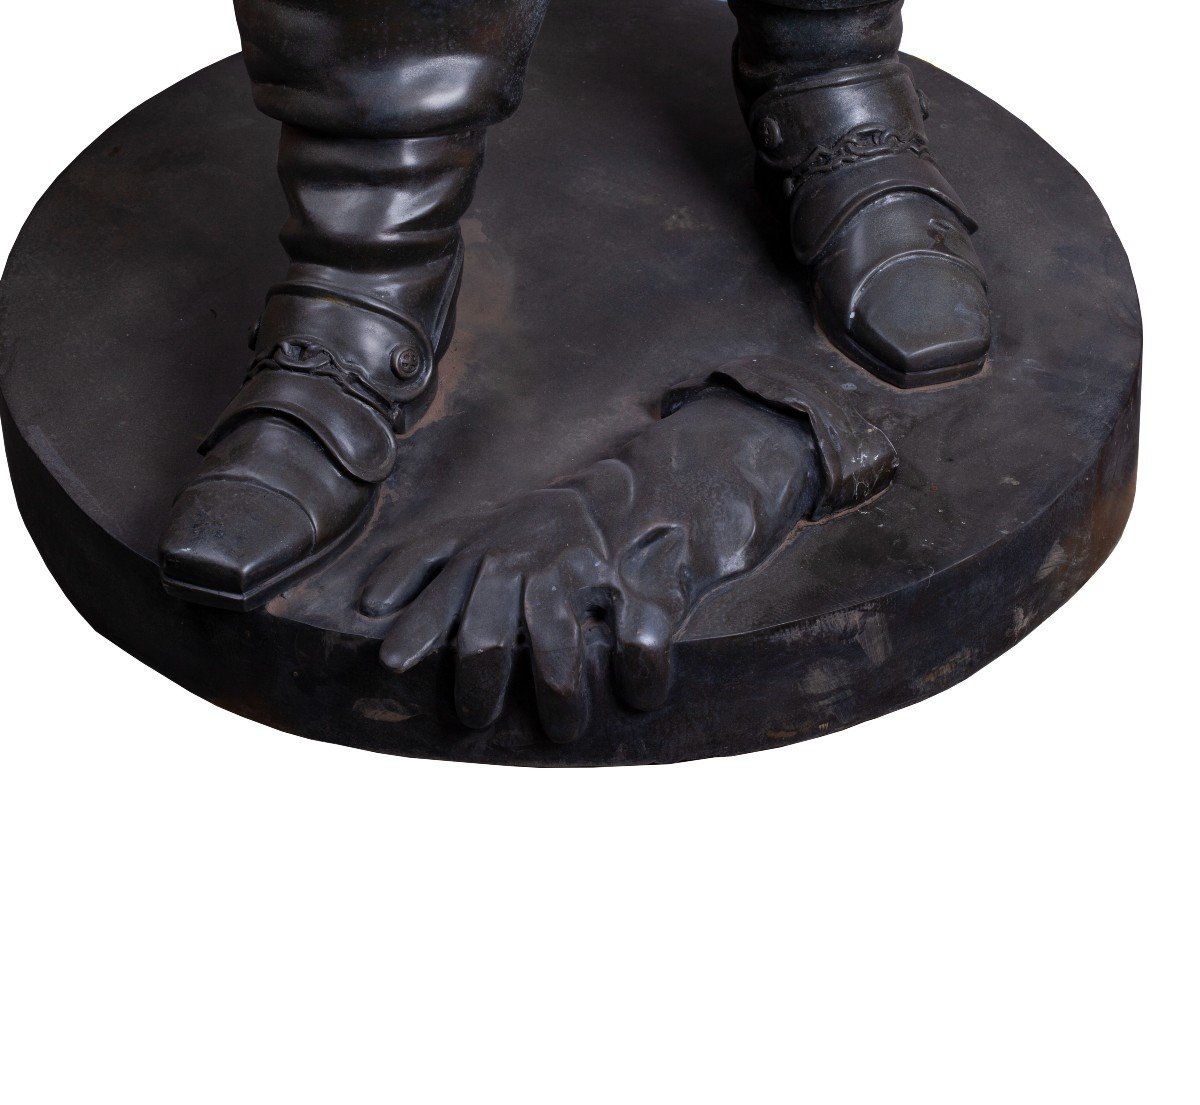 Sculpture En Bronze d'Un Mousquetaire En Pleine Croissance Humaine. Très Détaillé Et Bien Fait.-photo-3